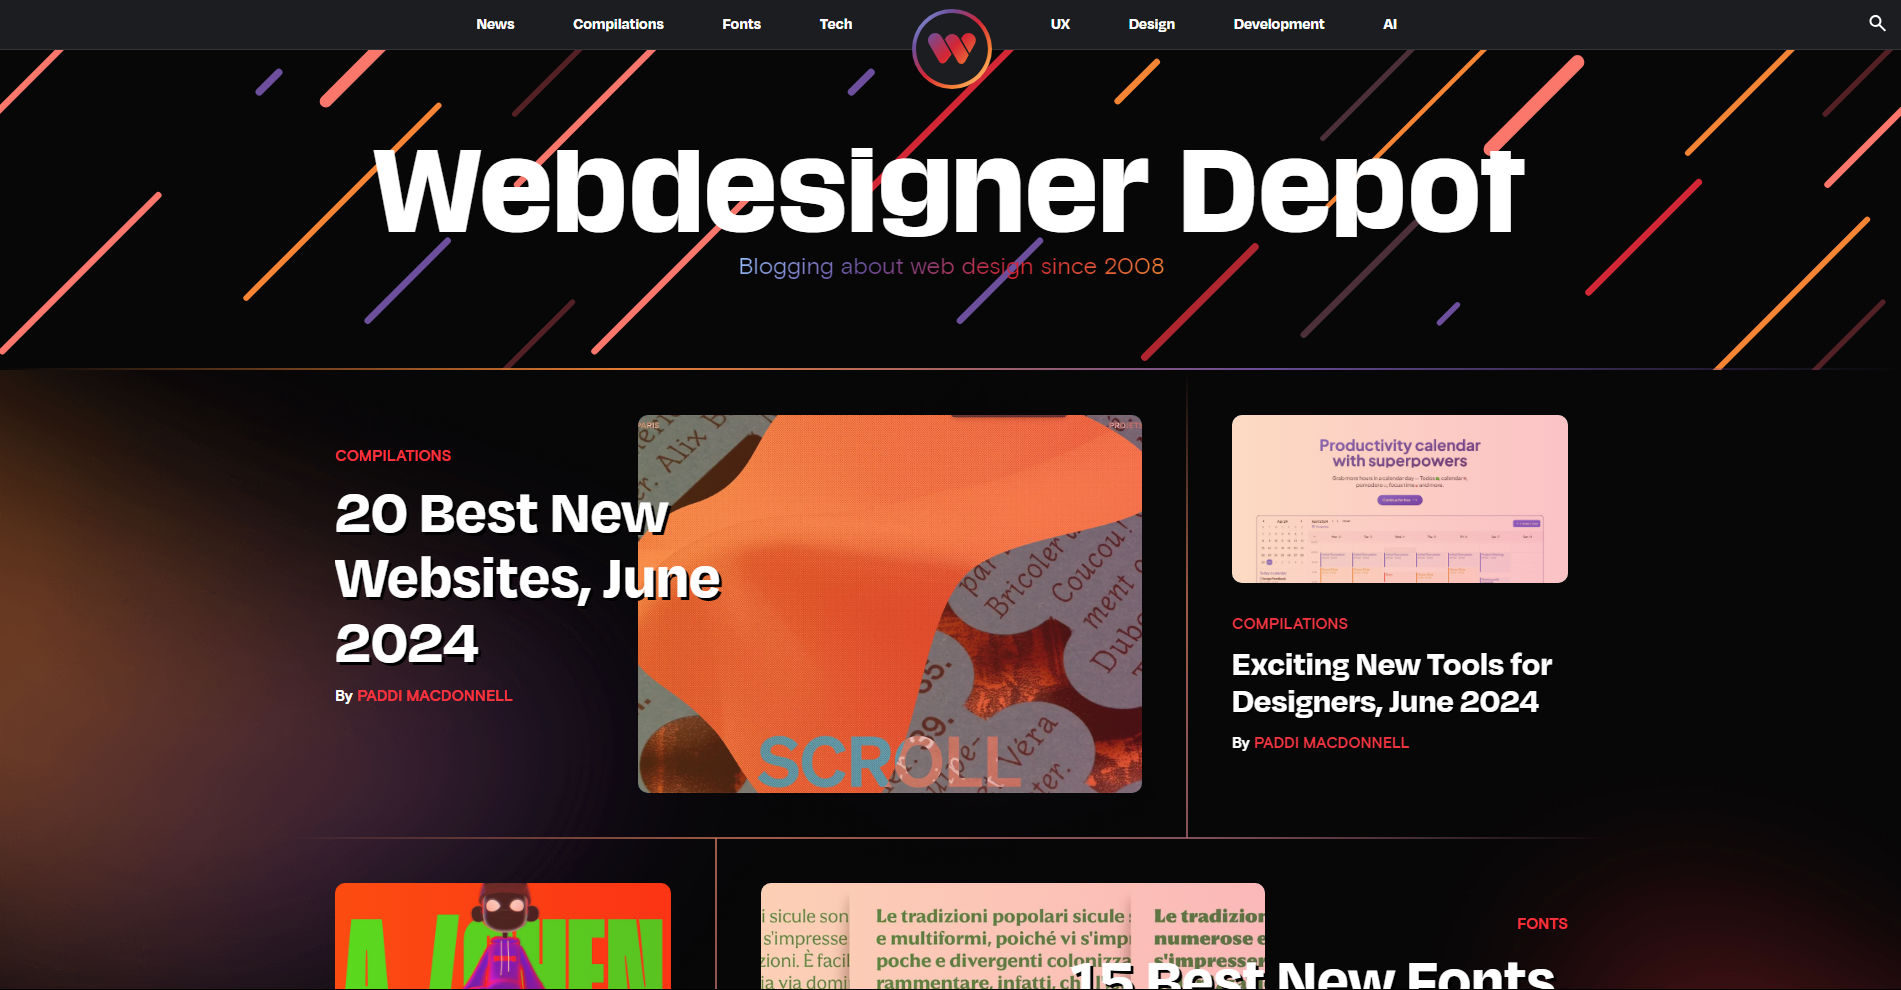 Web Designer Depot: Programming blog and website